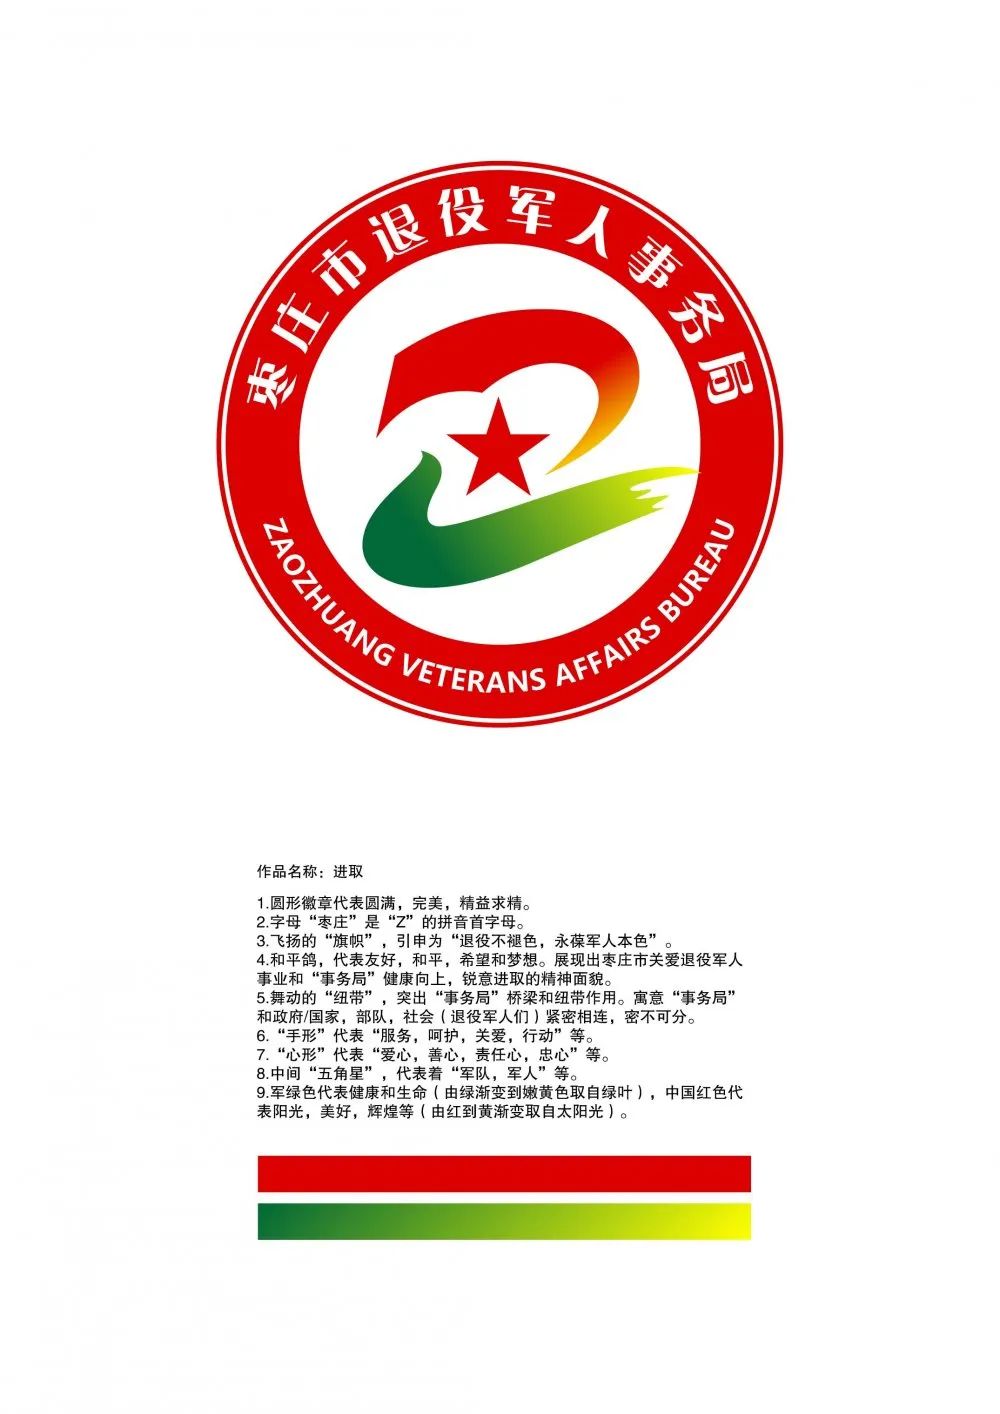 枣庄市退役军人事务局logo征集获奖作品公布